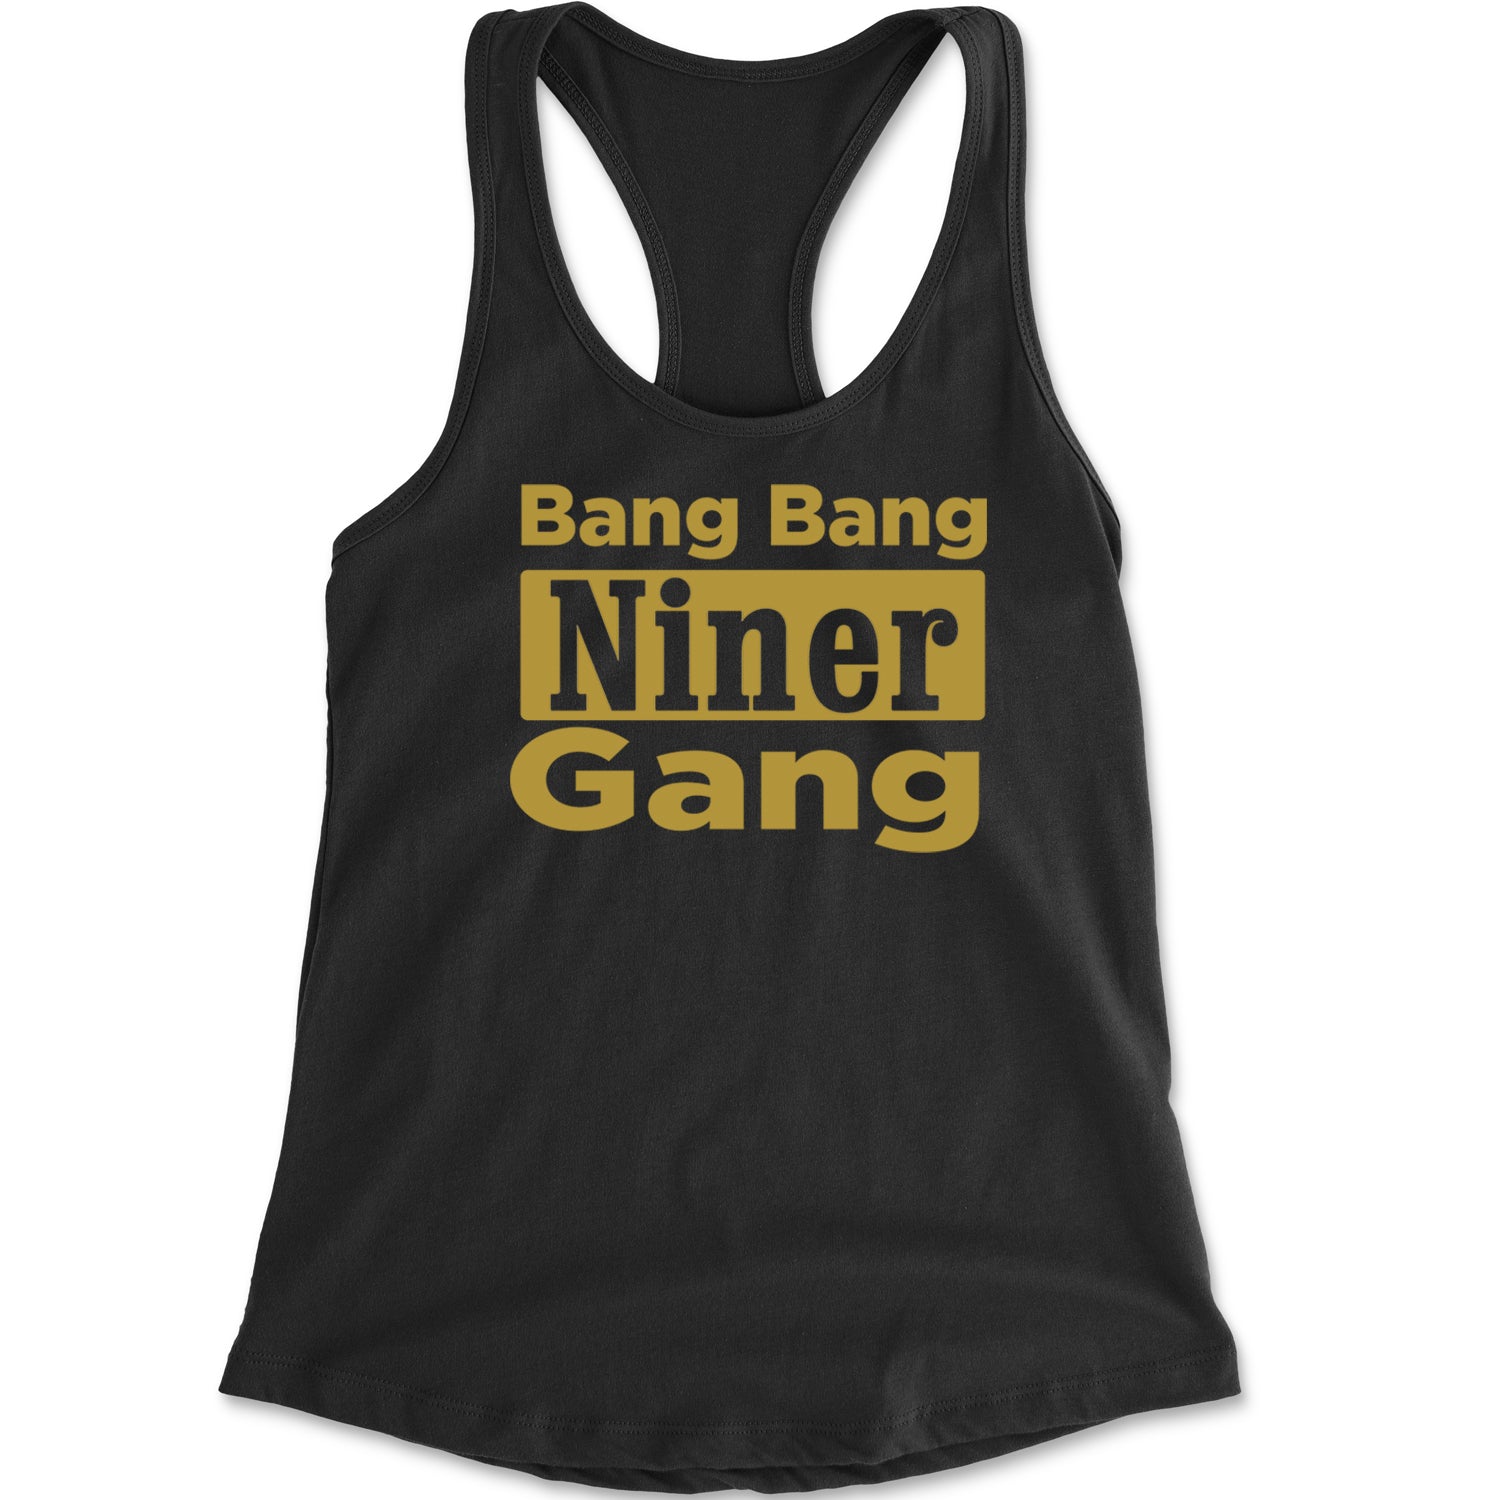 Bang Bang Niner Gang San Francisco Racerback Tank Top for Women